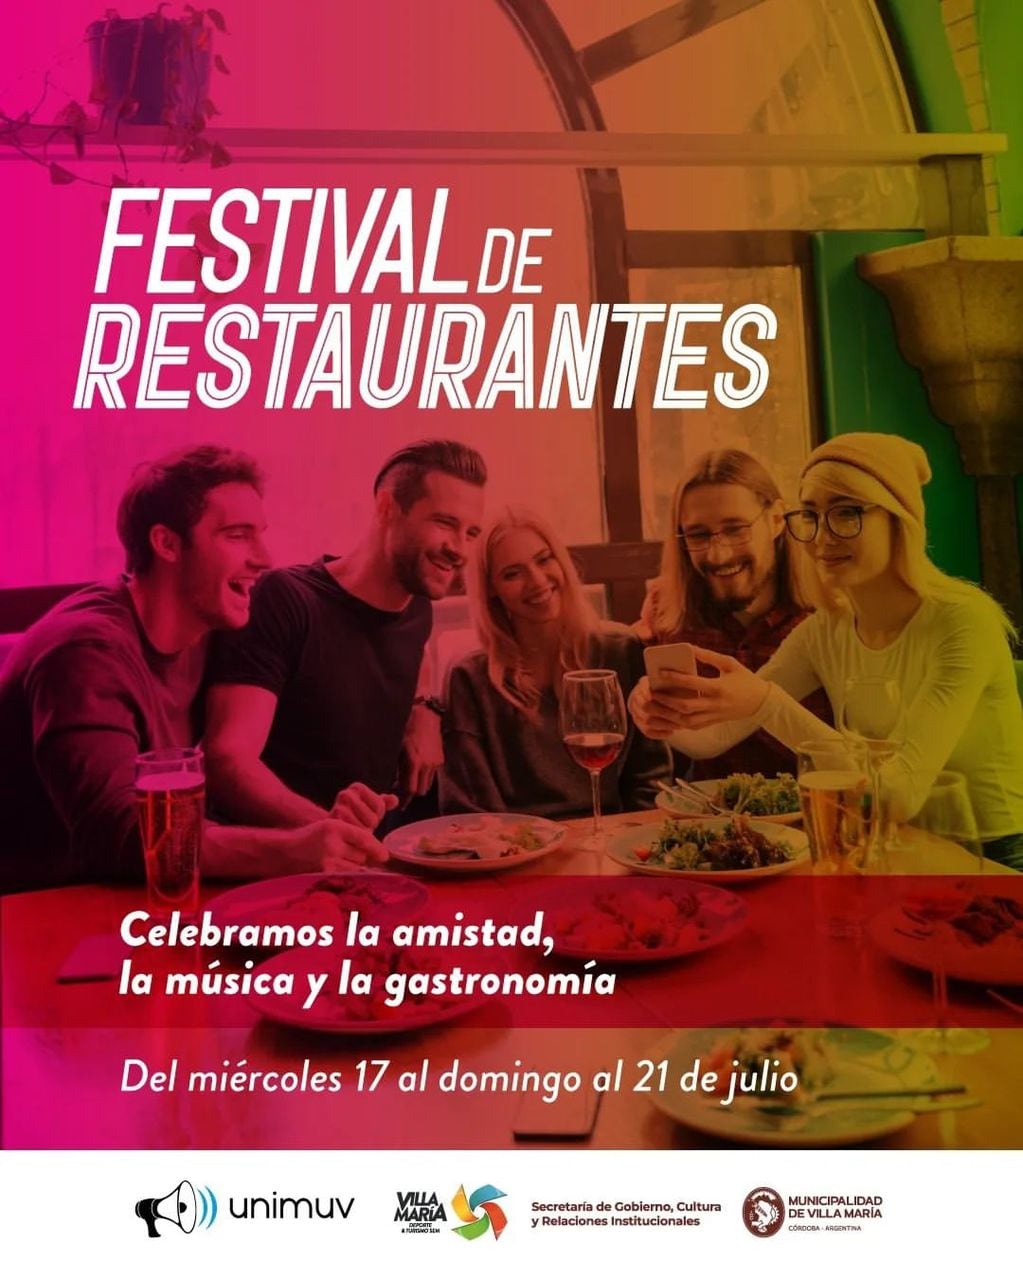 El Festival de Restaurantes en Villa María celebra la amistad con gastronomía y música.